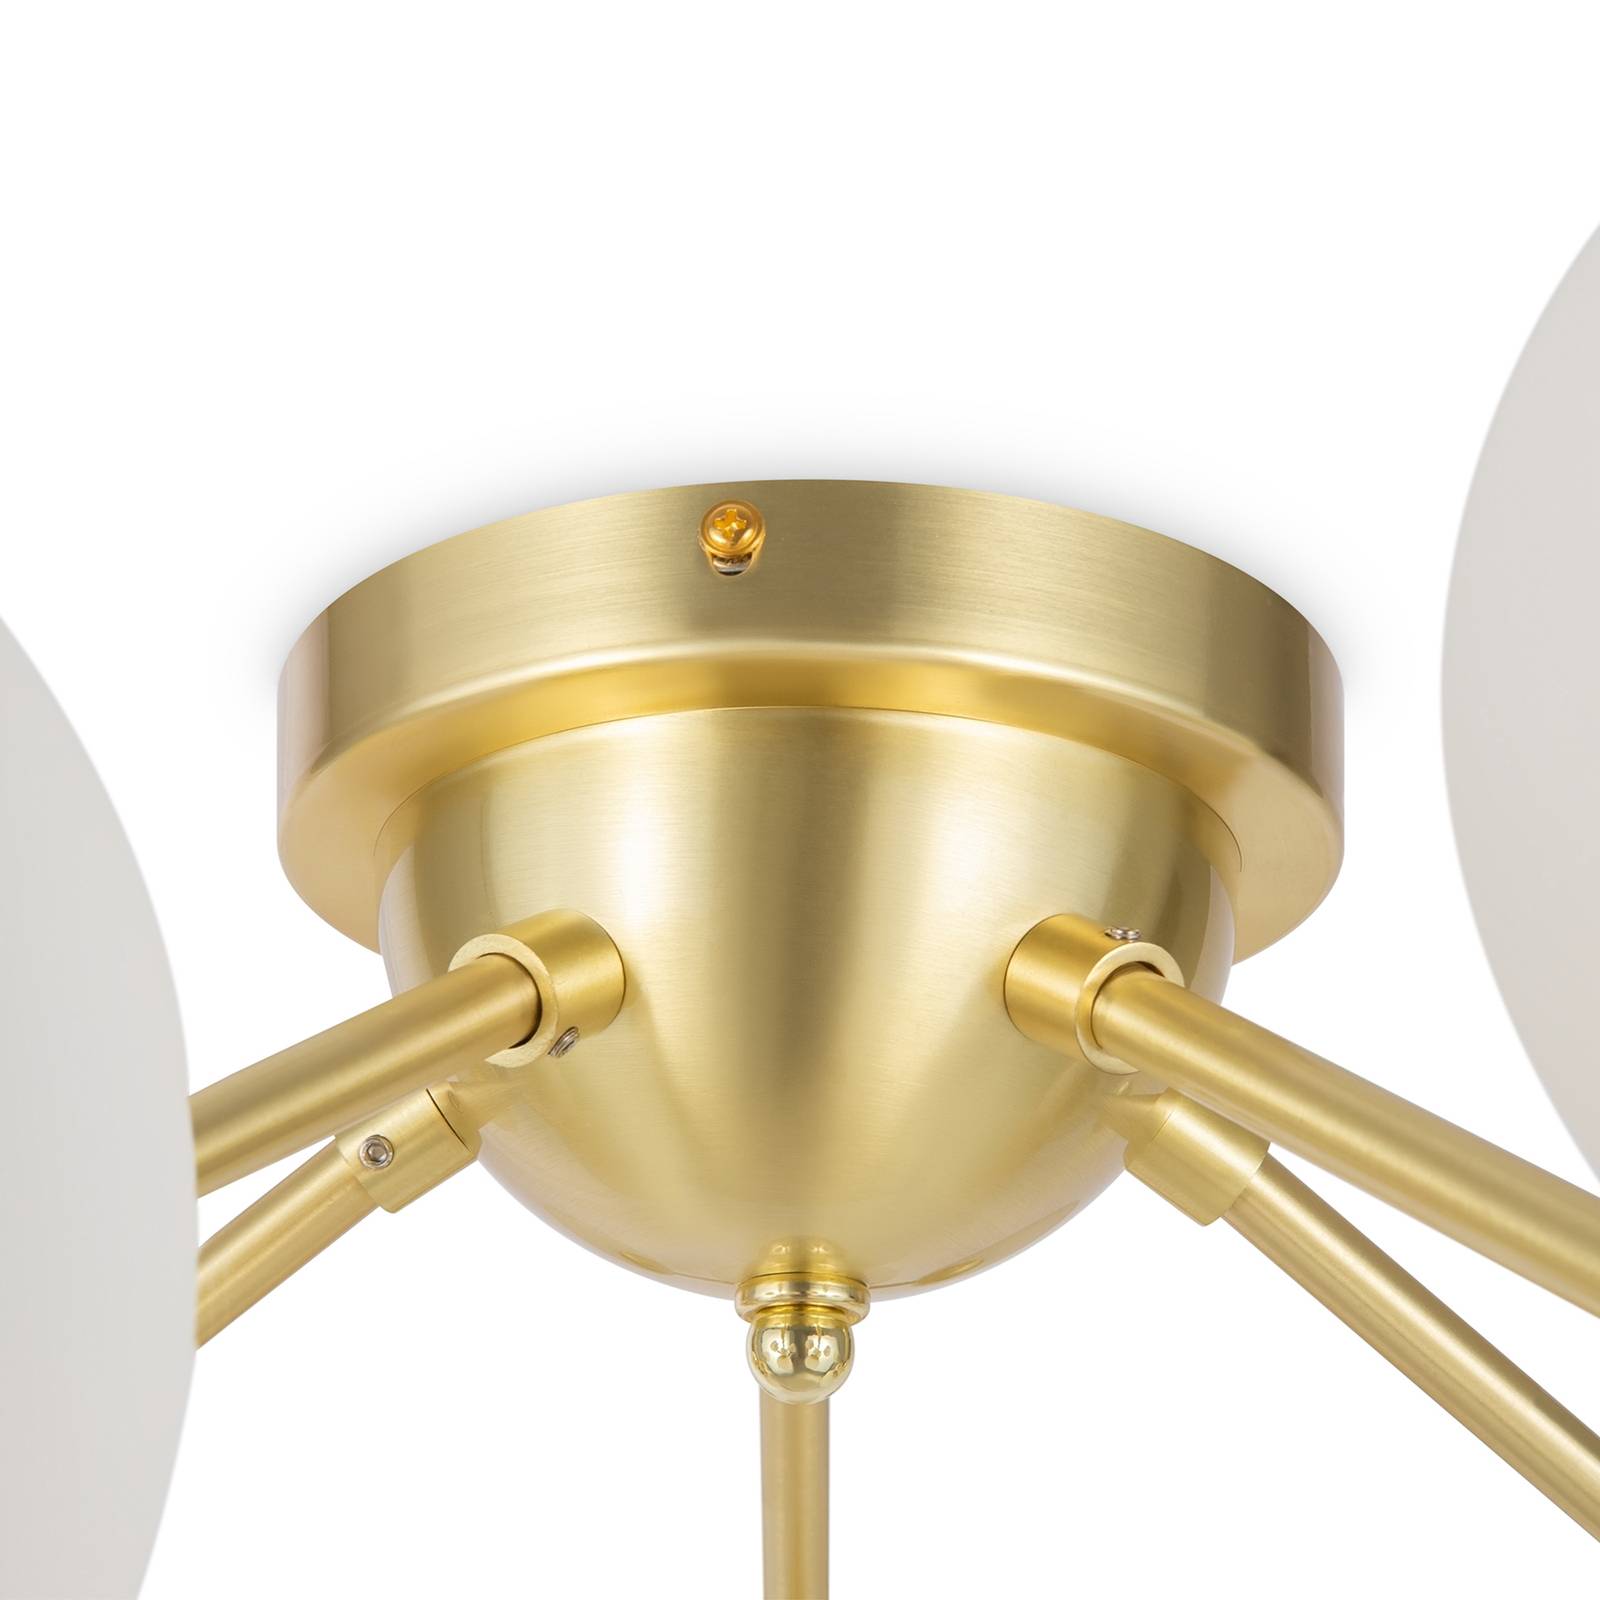 Maytoni dallas mennyezeti lámpa, 20 lámpás, 25 cm magas, arany színű